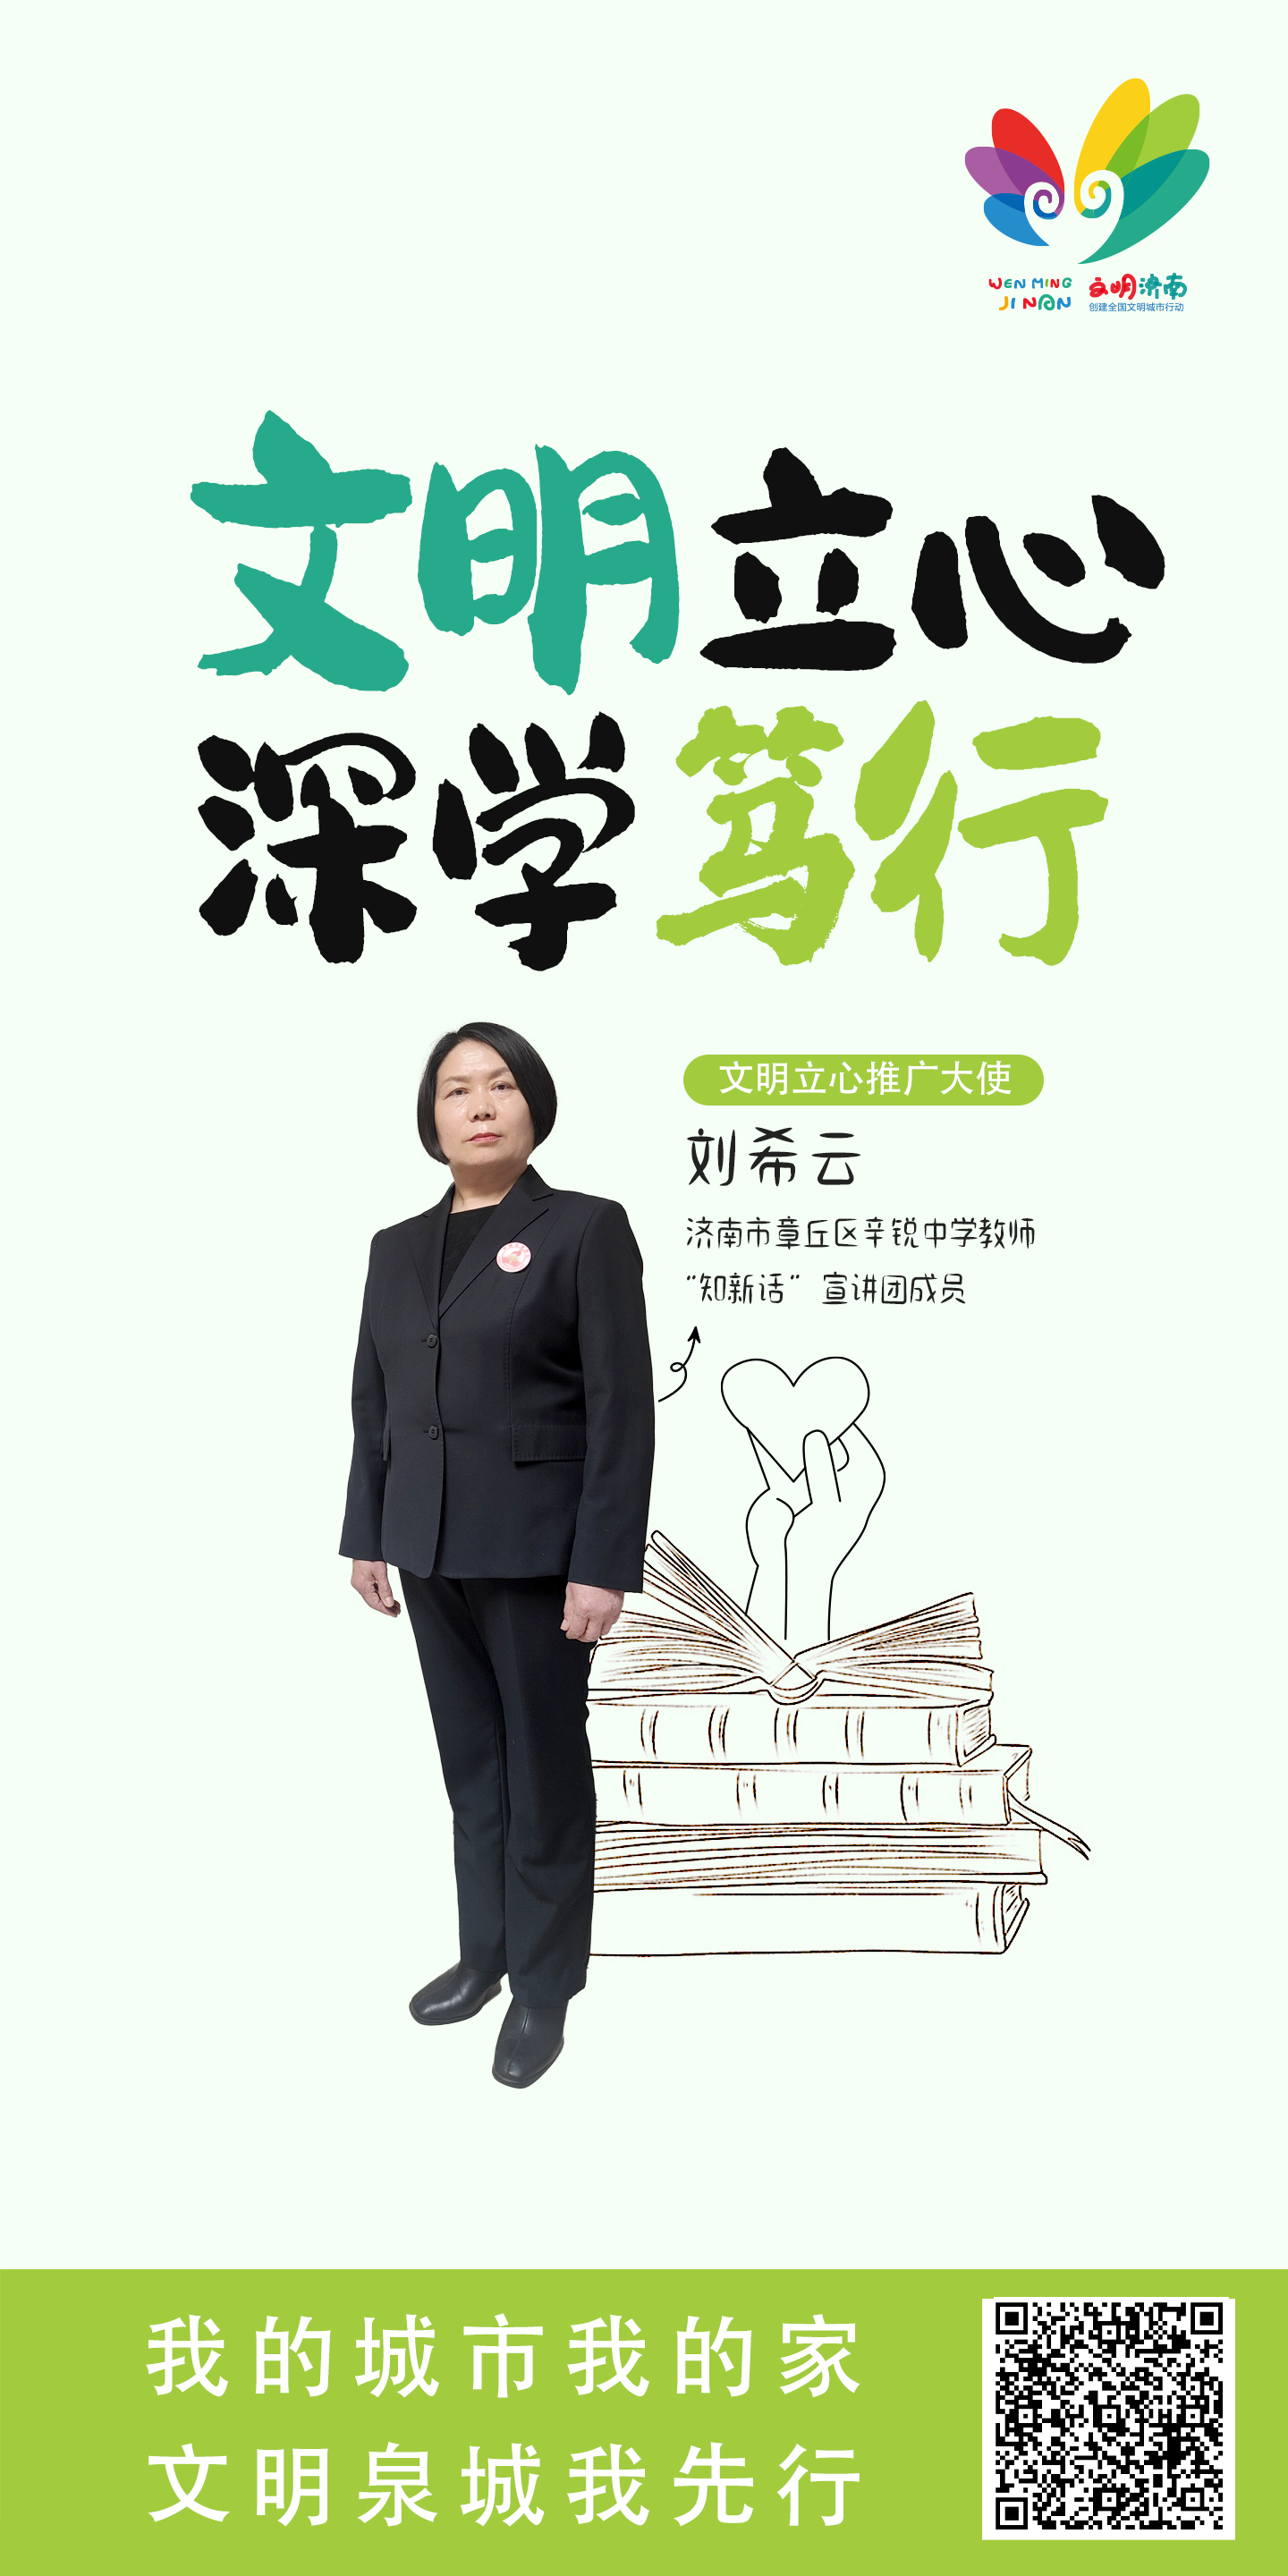 刘希云 “文明立心”行动推广大使宣传公益广告